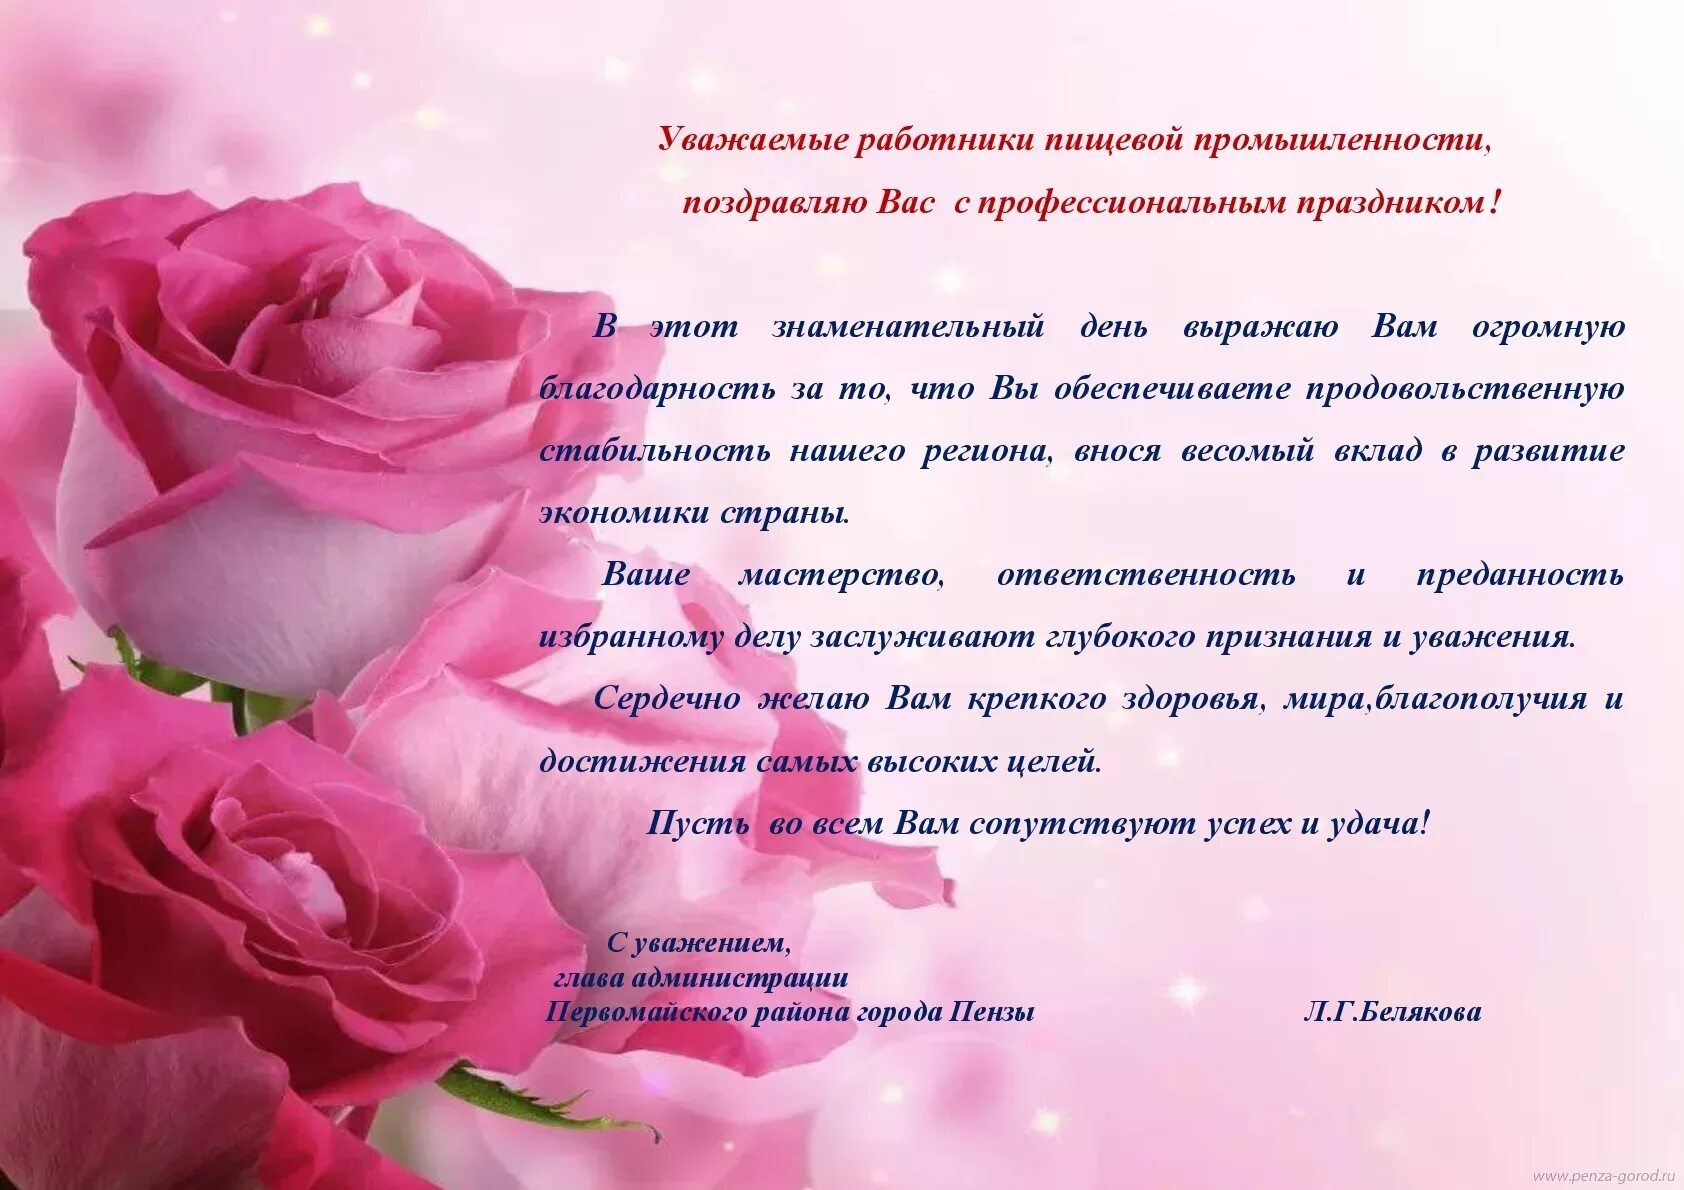 С днем пищевого работника поздравления. С днём рождения женщине на татарском языке. Поздравление на татарском языке. Открытки с днем пищевика. Поздравление татарам